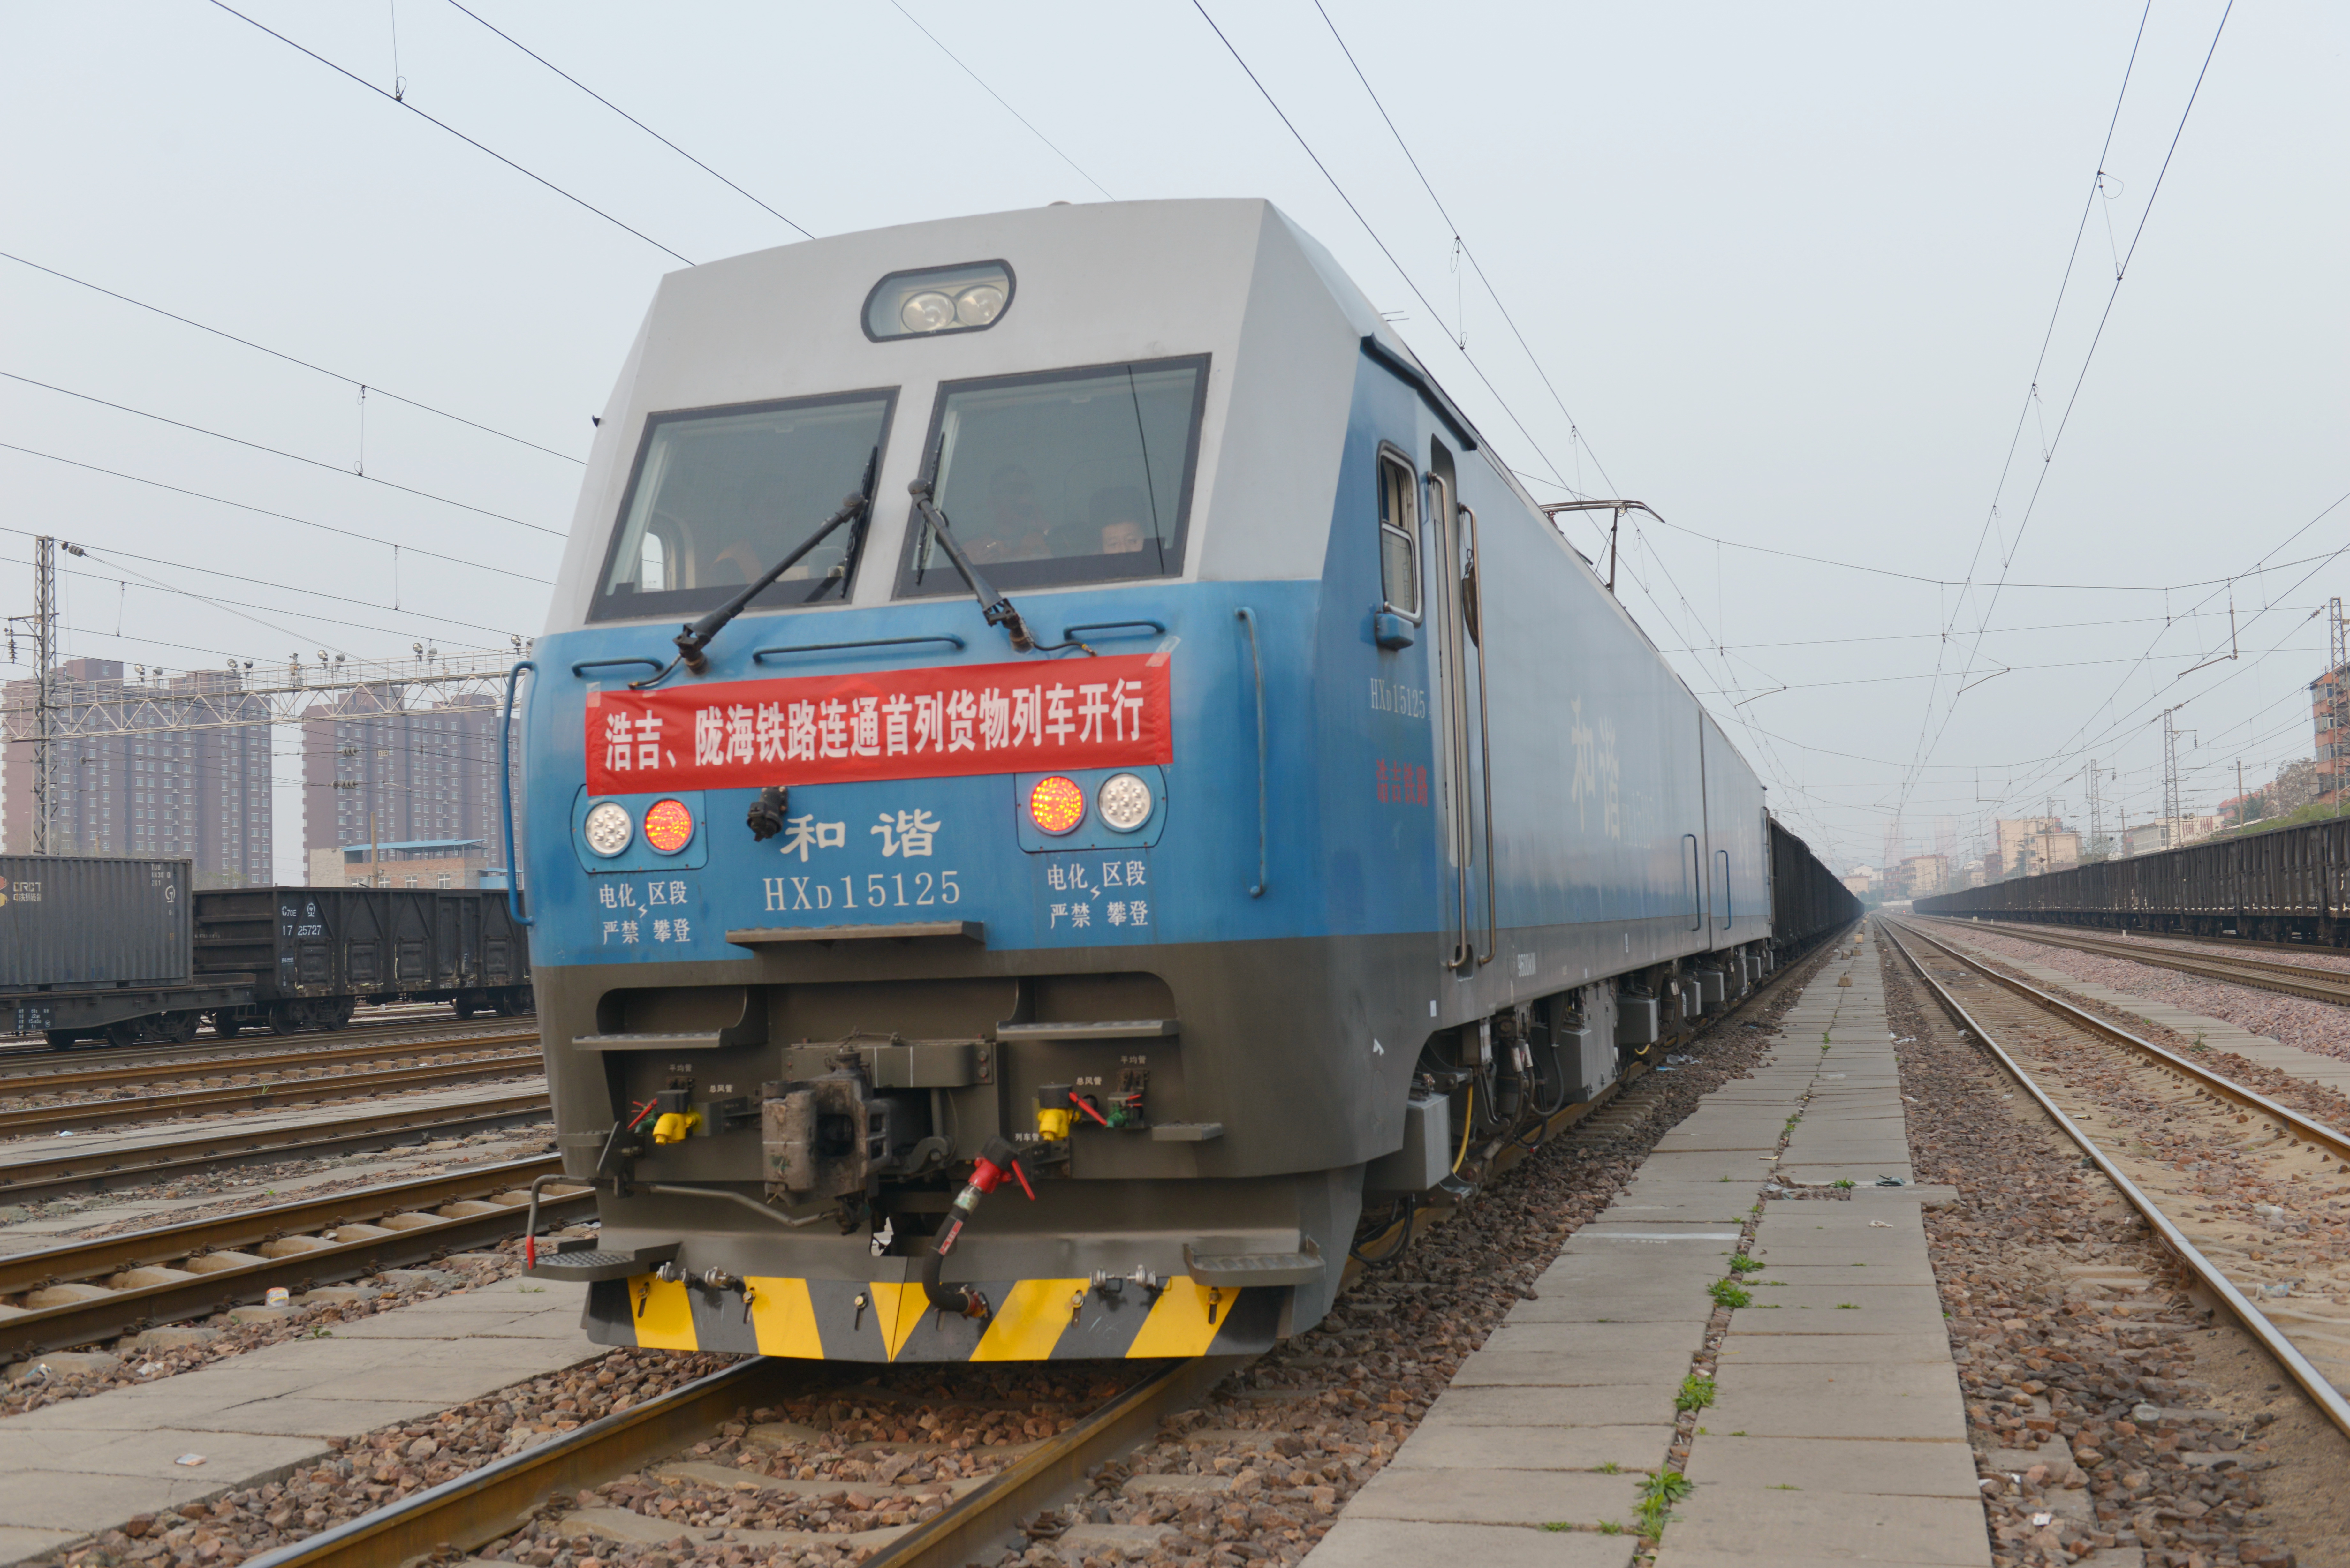 浩吉、隴海鐵路實現互聯互通 煤炭運力再擴大